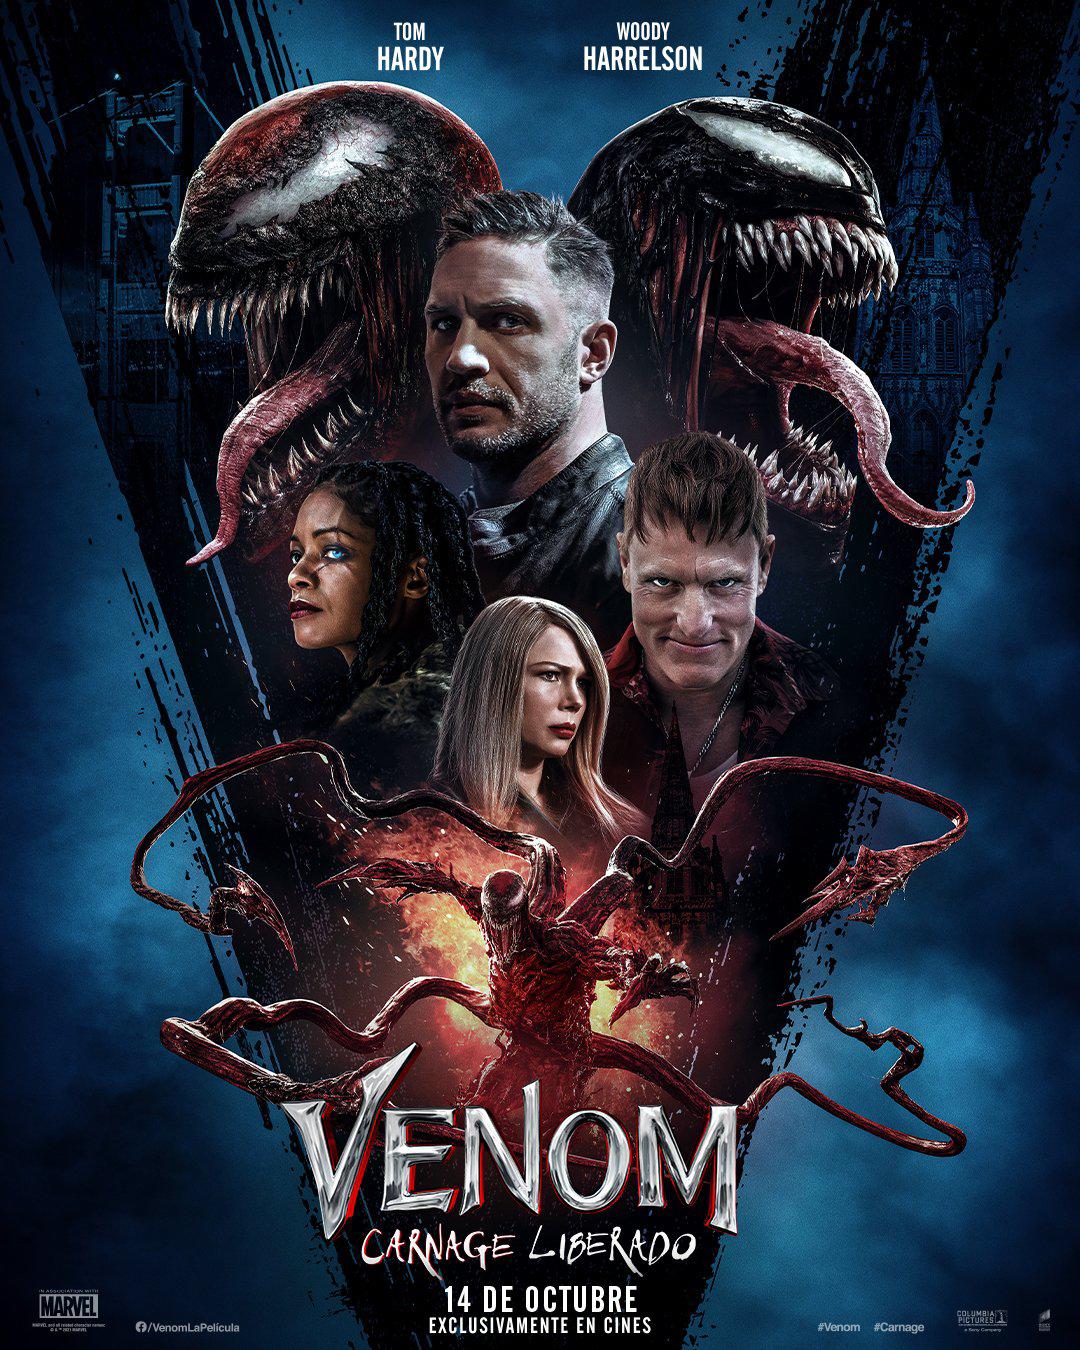 $!‘Venom: Carnage liberado’ adelanta su estreno en México, llegará el 14 de octubre